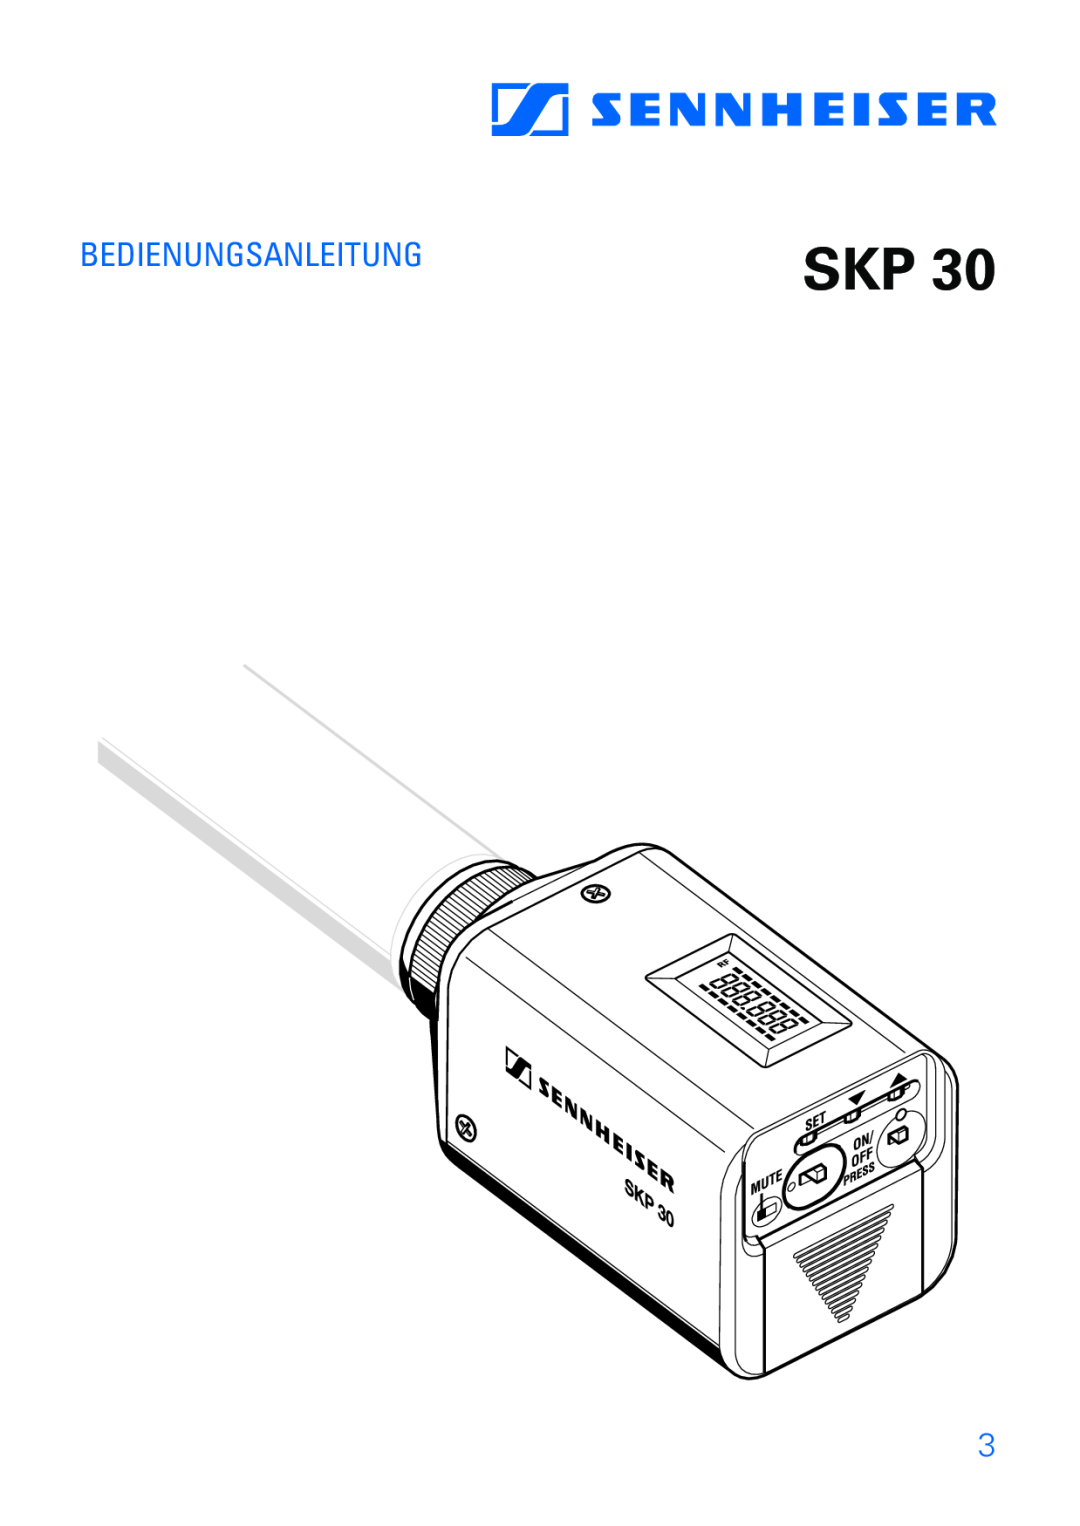 Sennheiser SKP 30 manual Bedienungsanleitung 